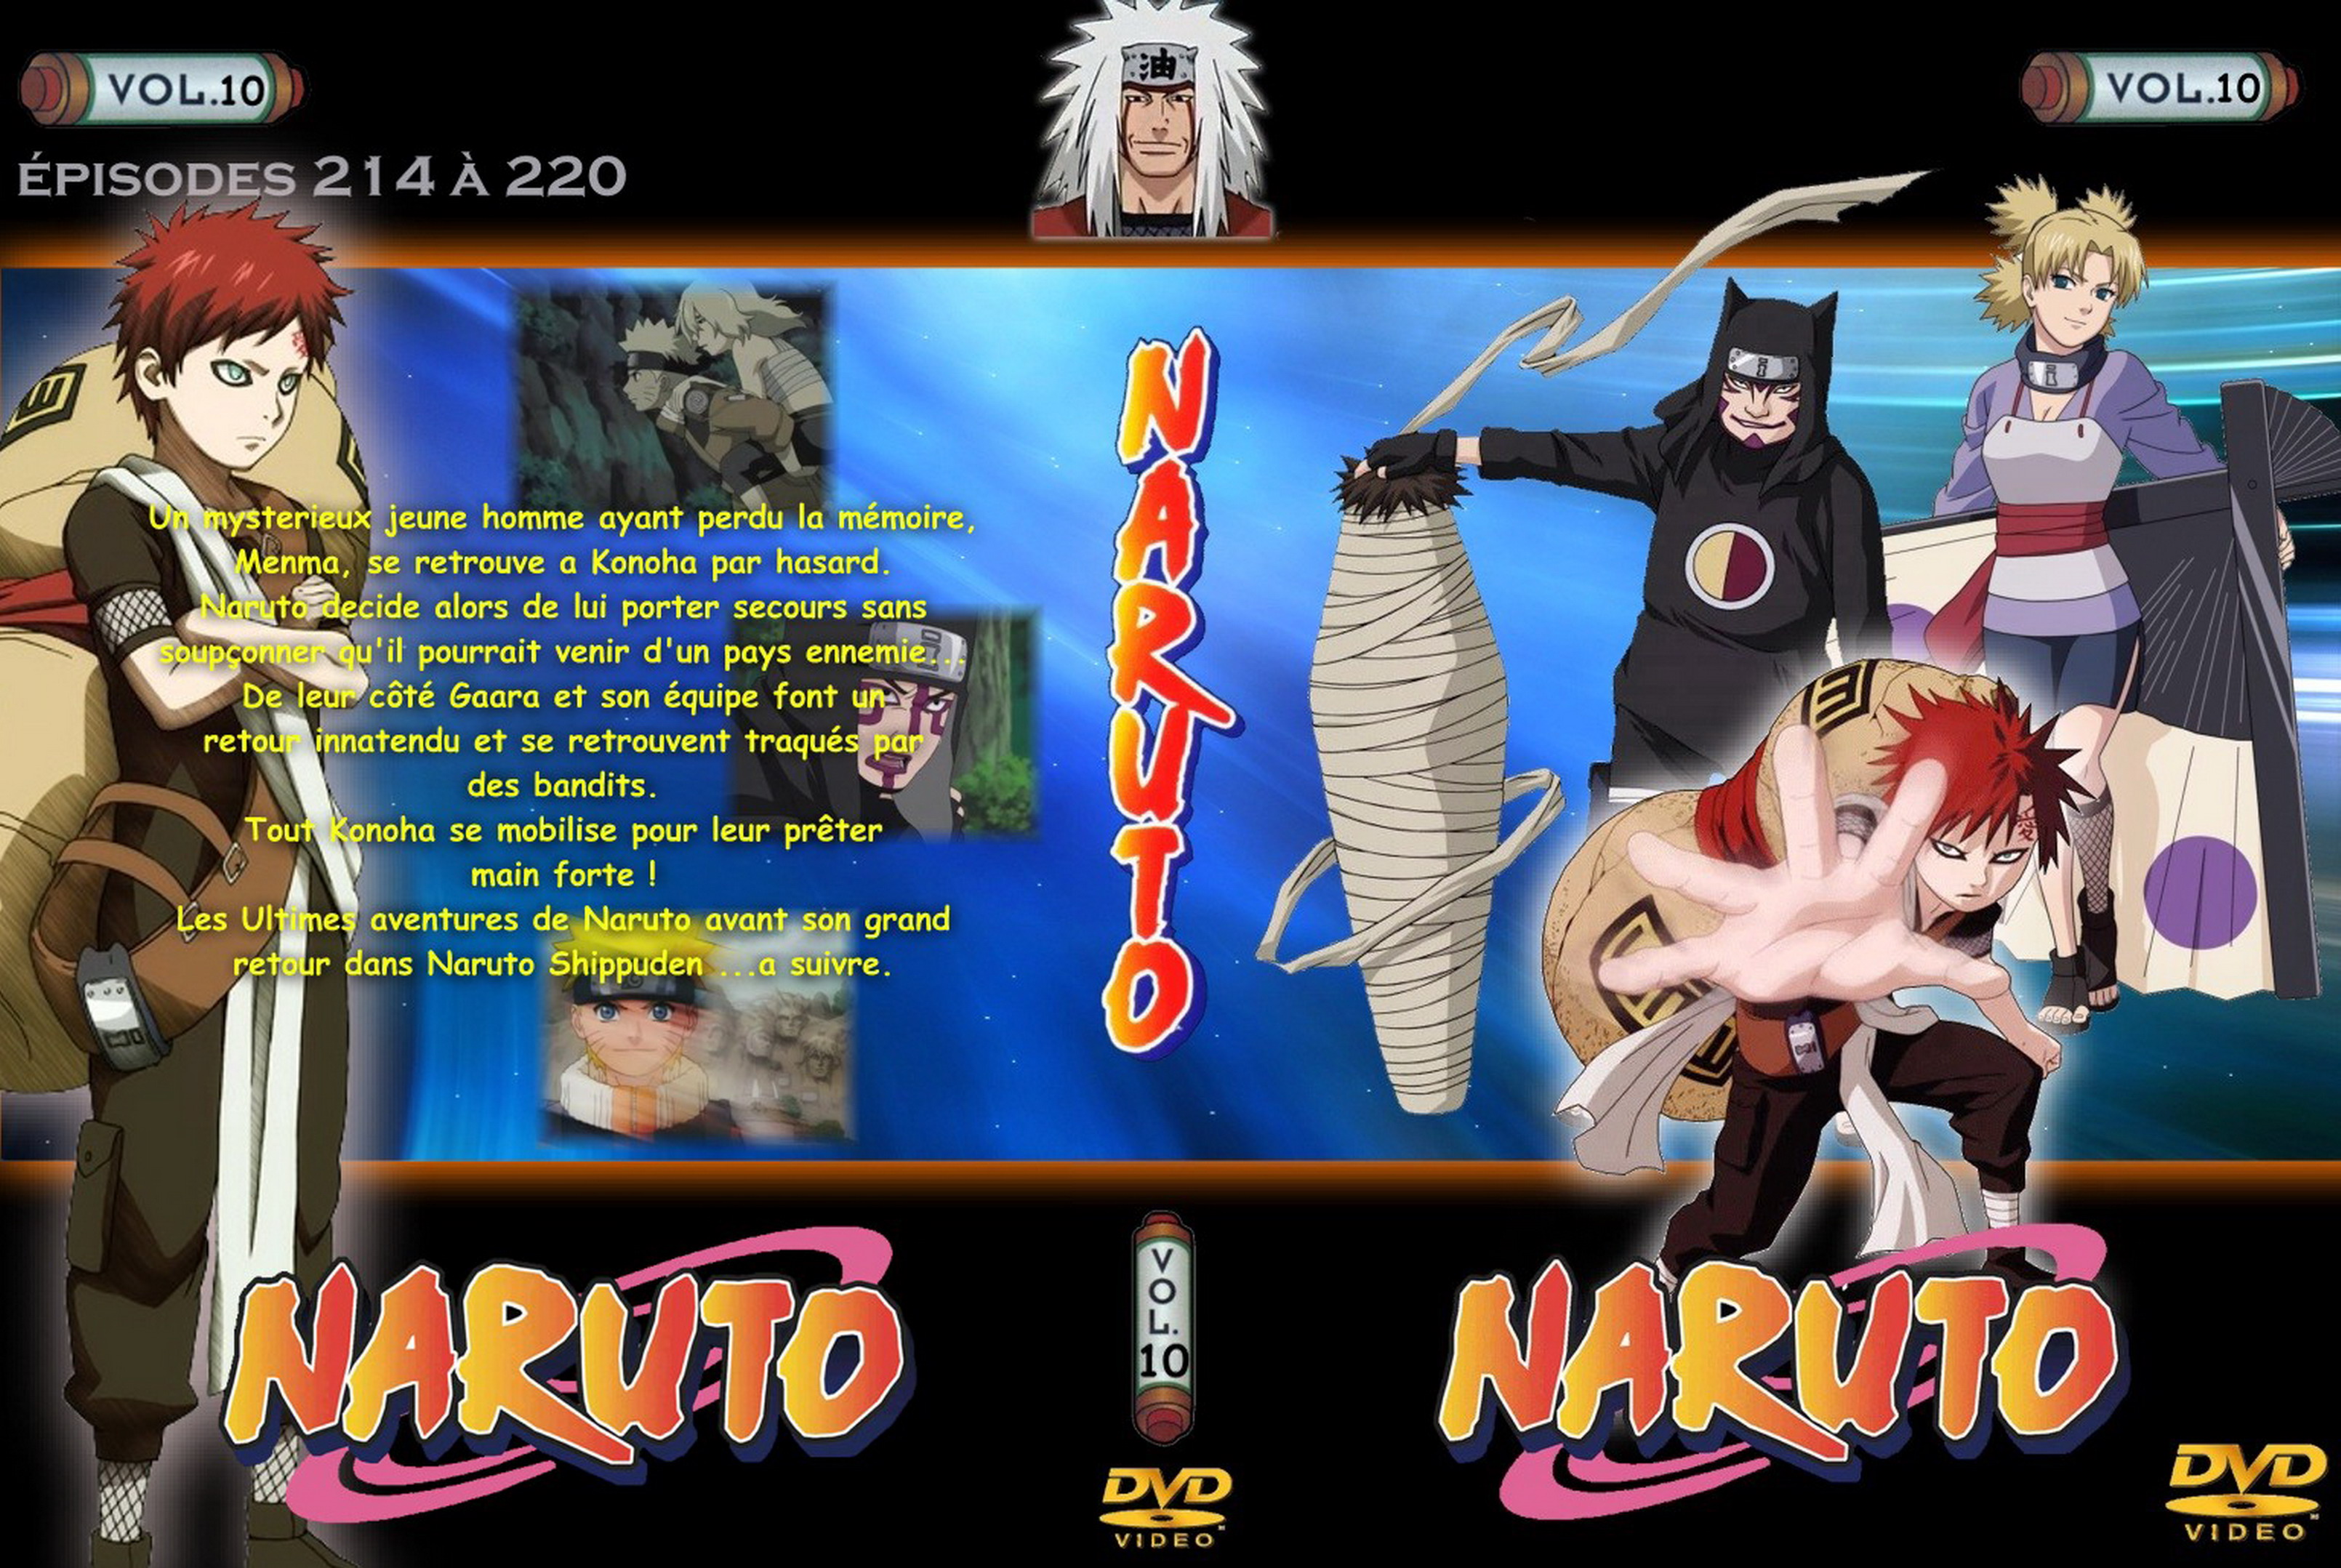 Jaquette DVD Naruto vol 10